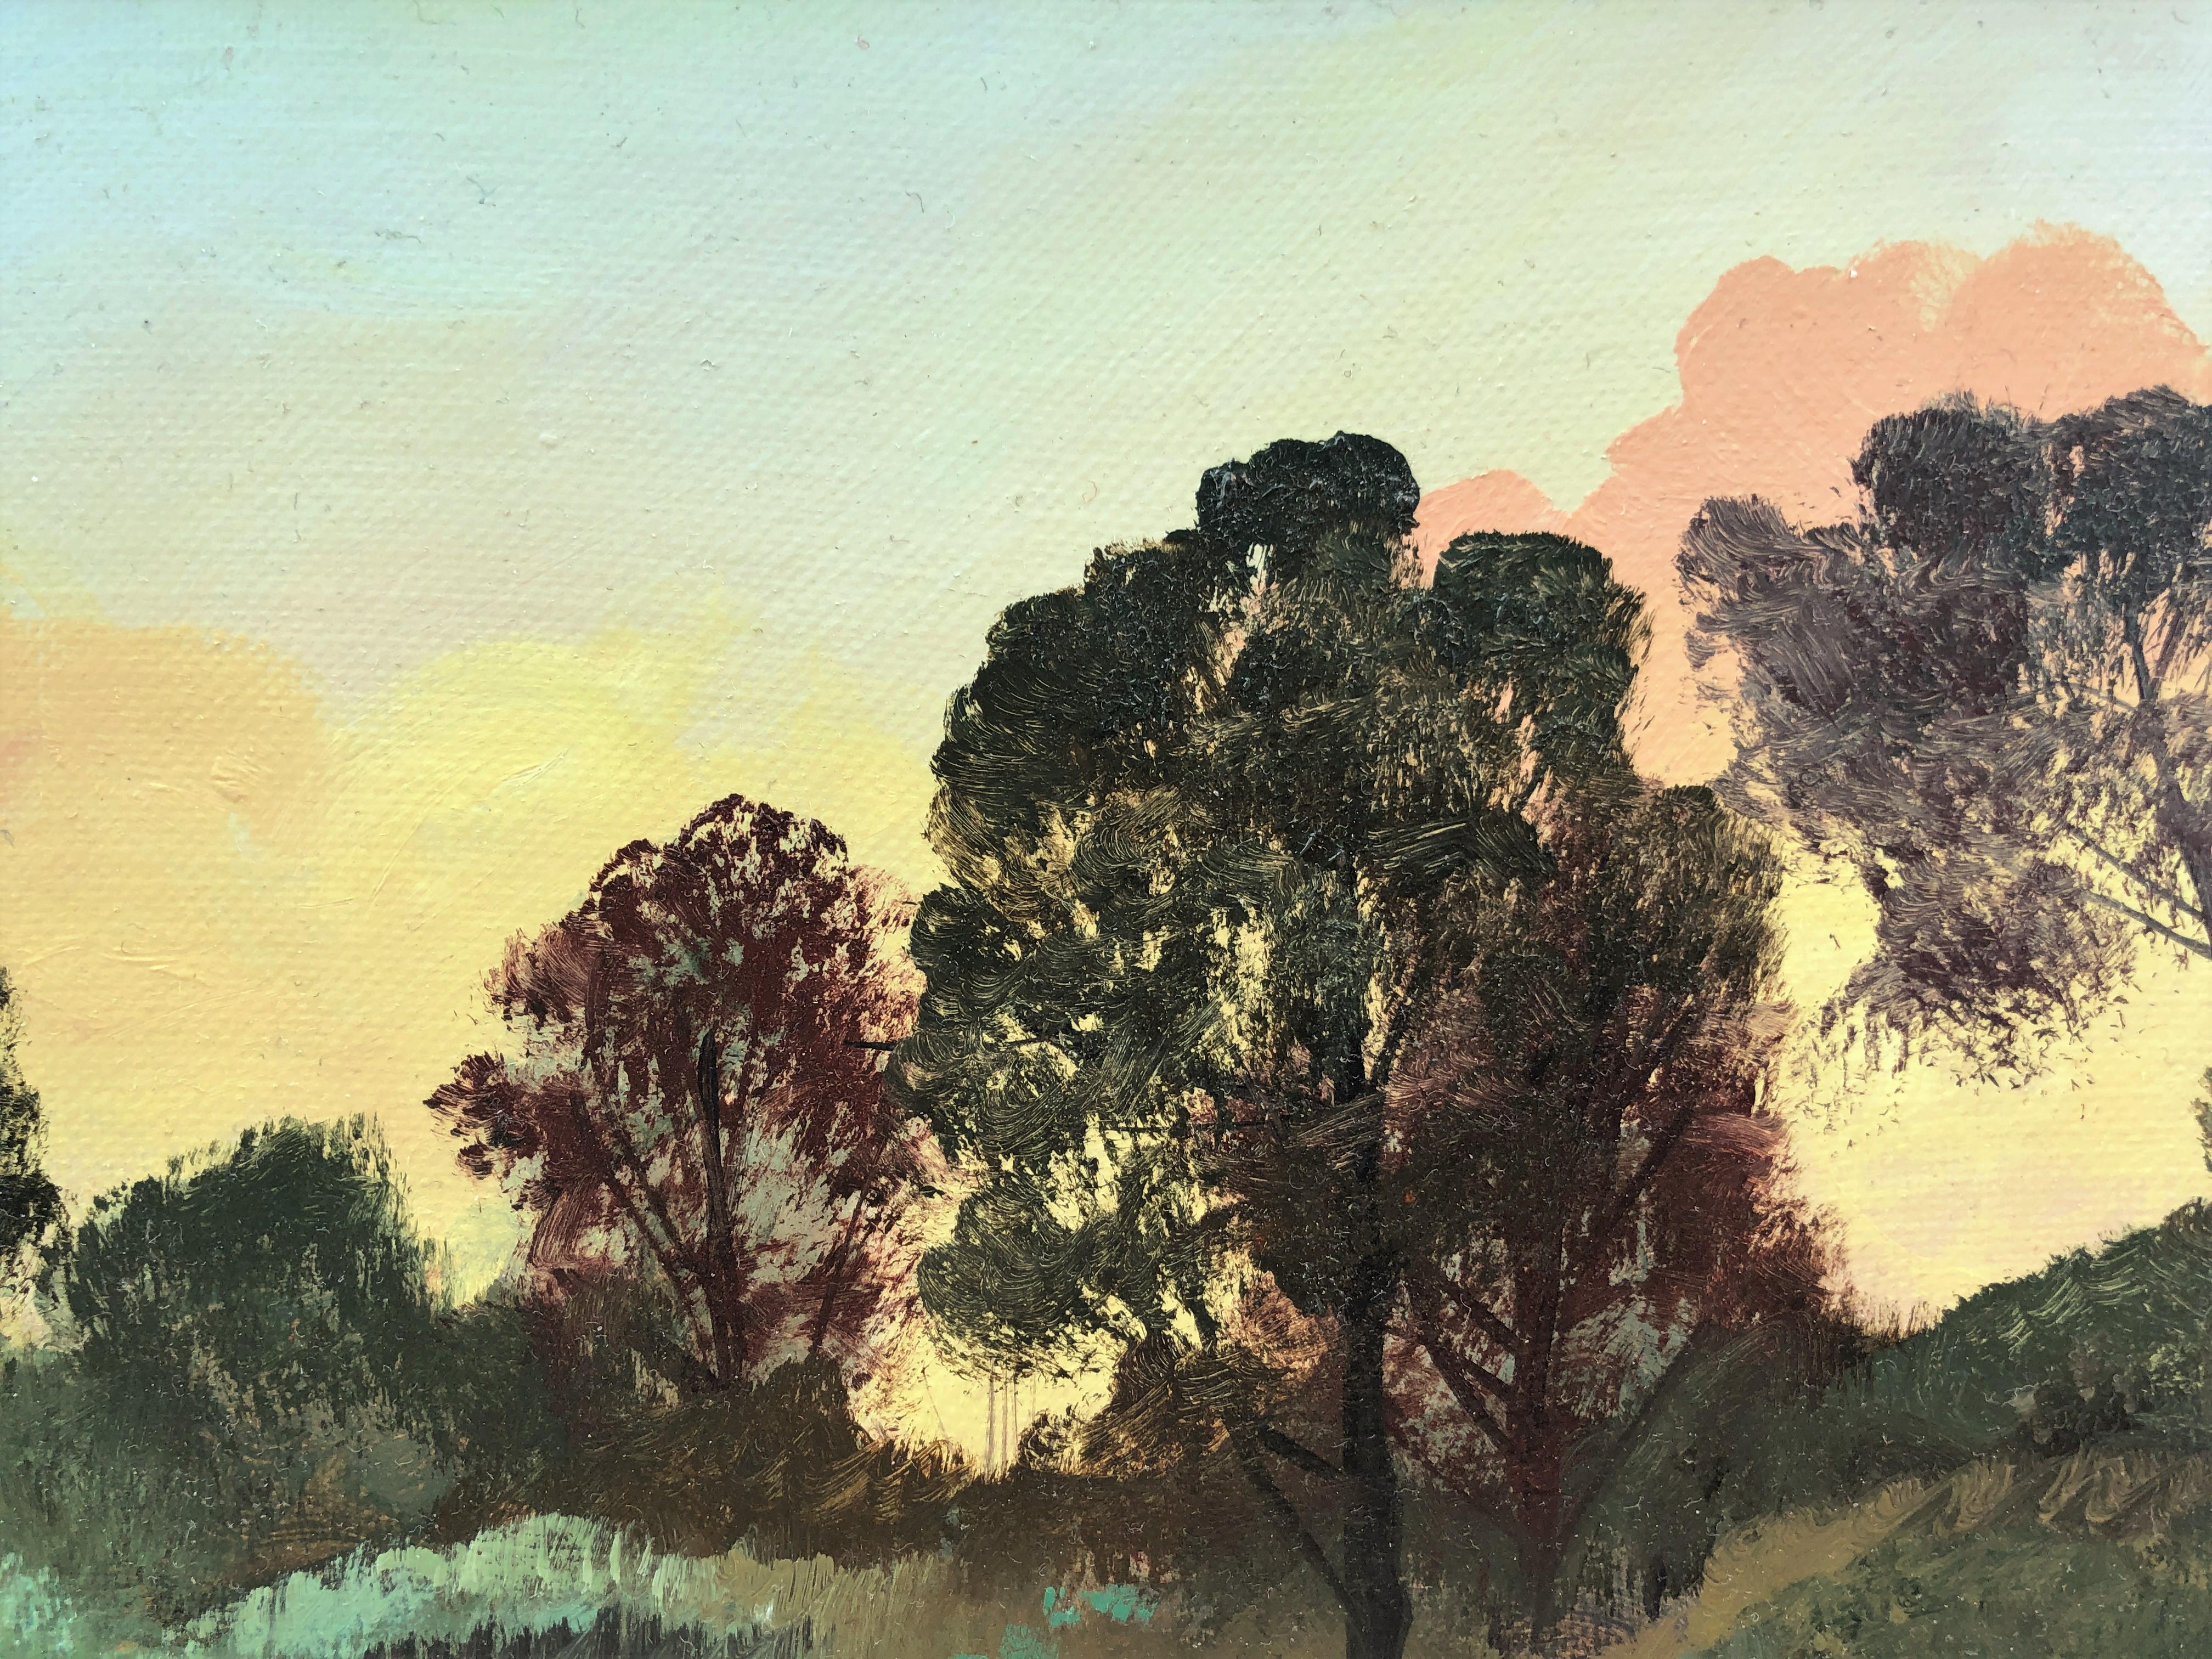 Peinture à l'huile sur toile - Paysage marin, coucher de soleil dans la forêt - Réalisme Painting par Alberto Biesok